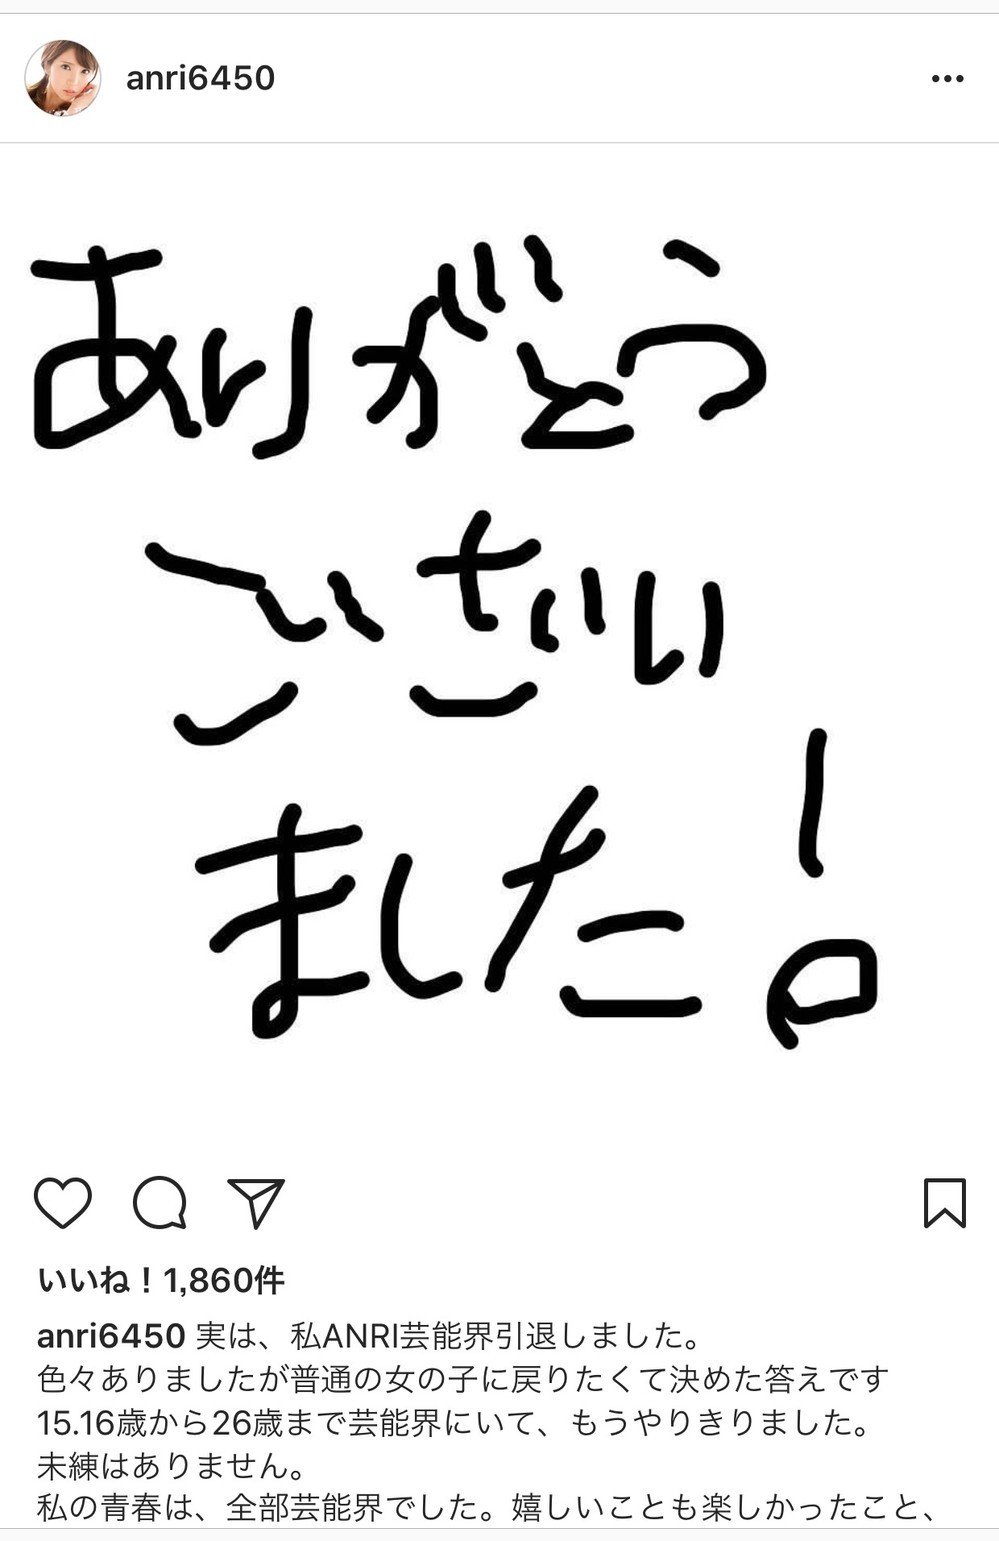 坂口杏里さんのインスタグラム・独特の字体で「ありがとうございました！」と感謝の言葉を書き込んだ